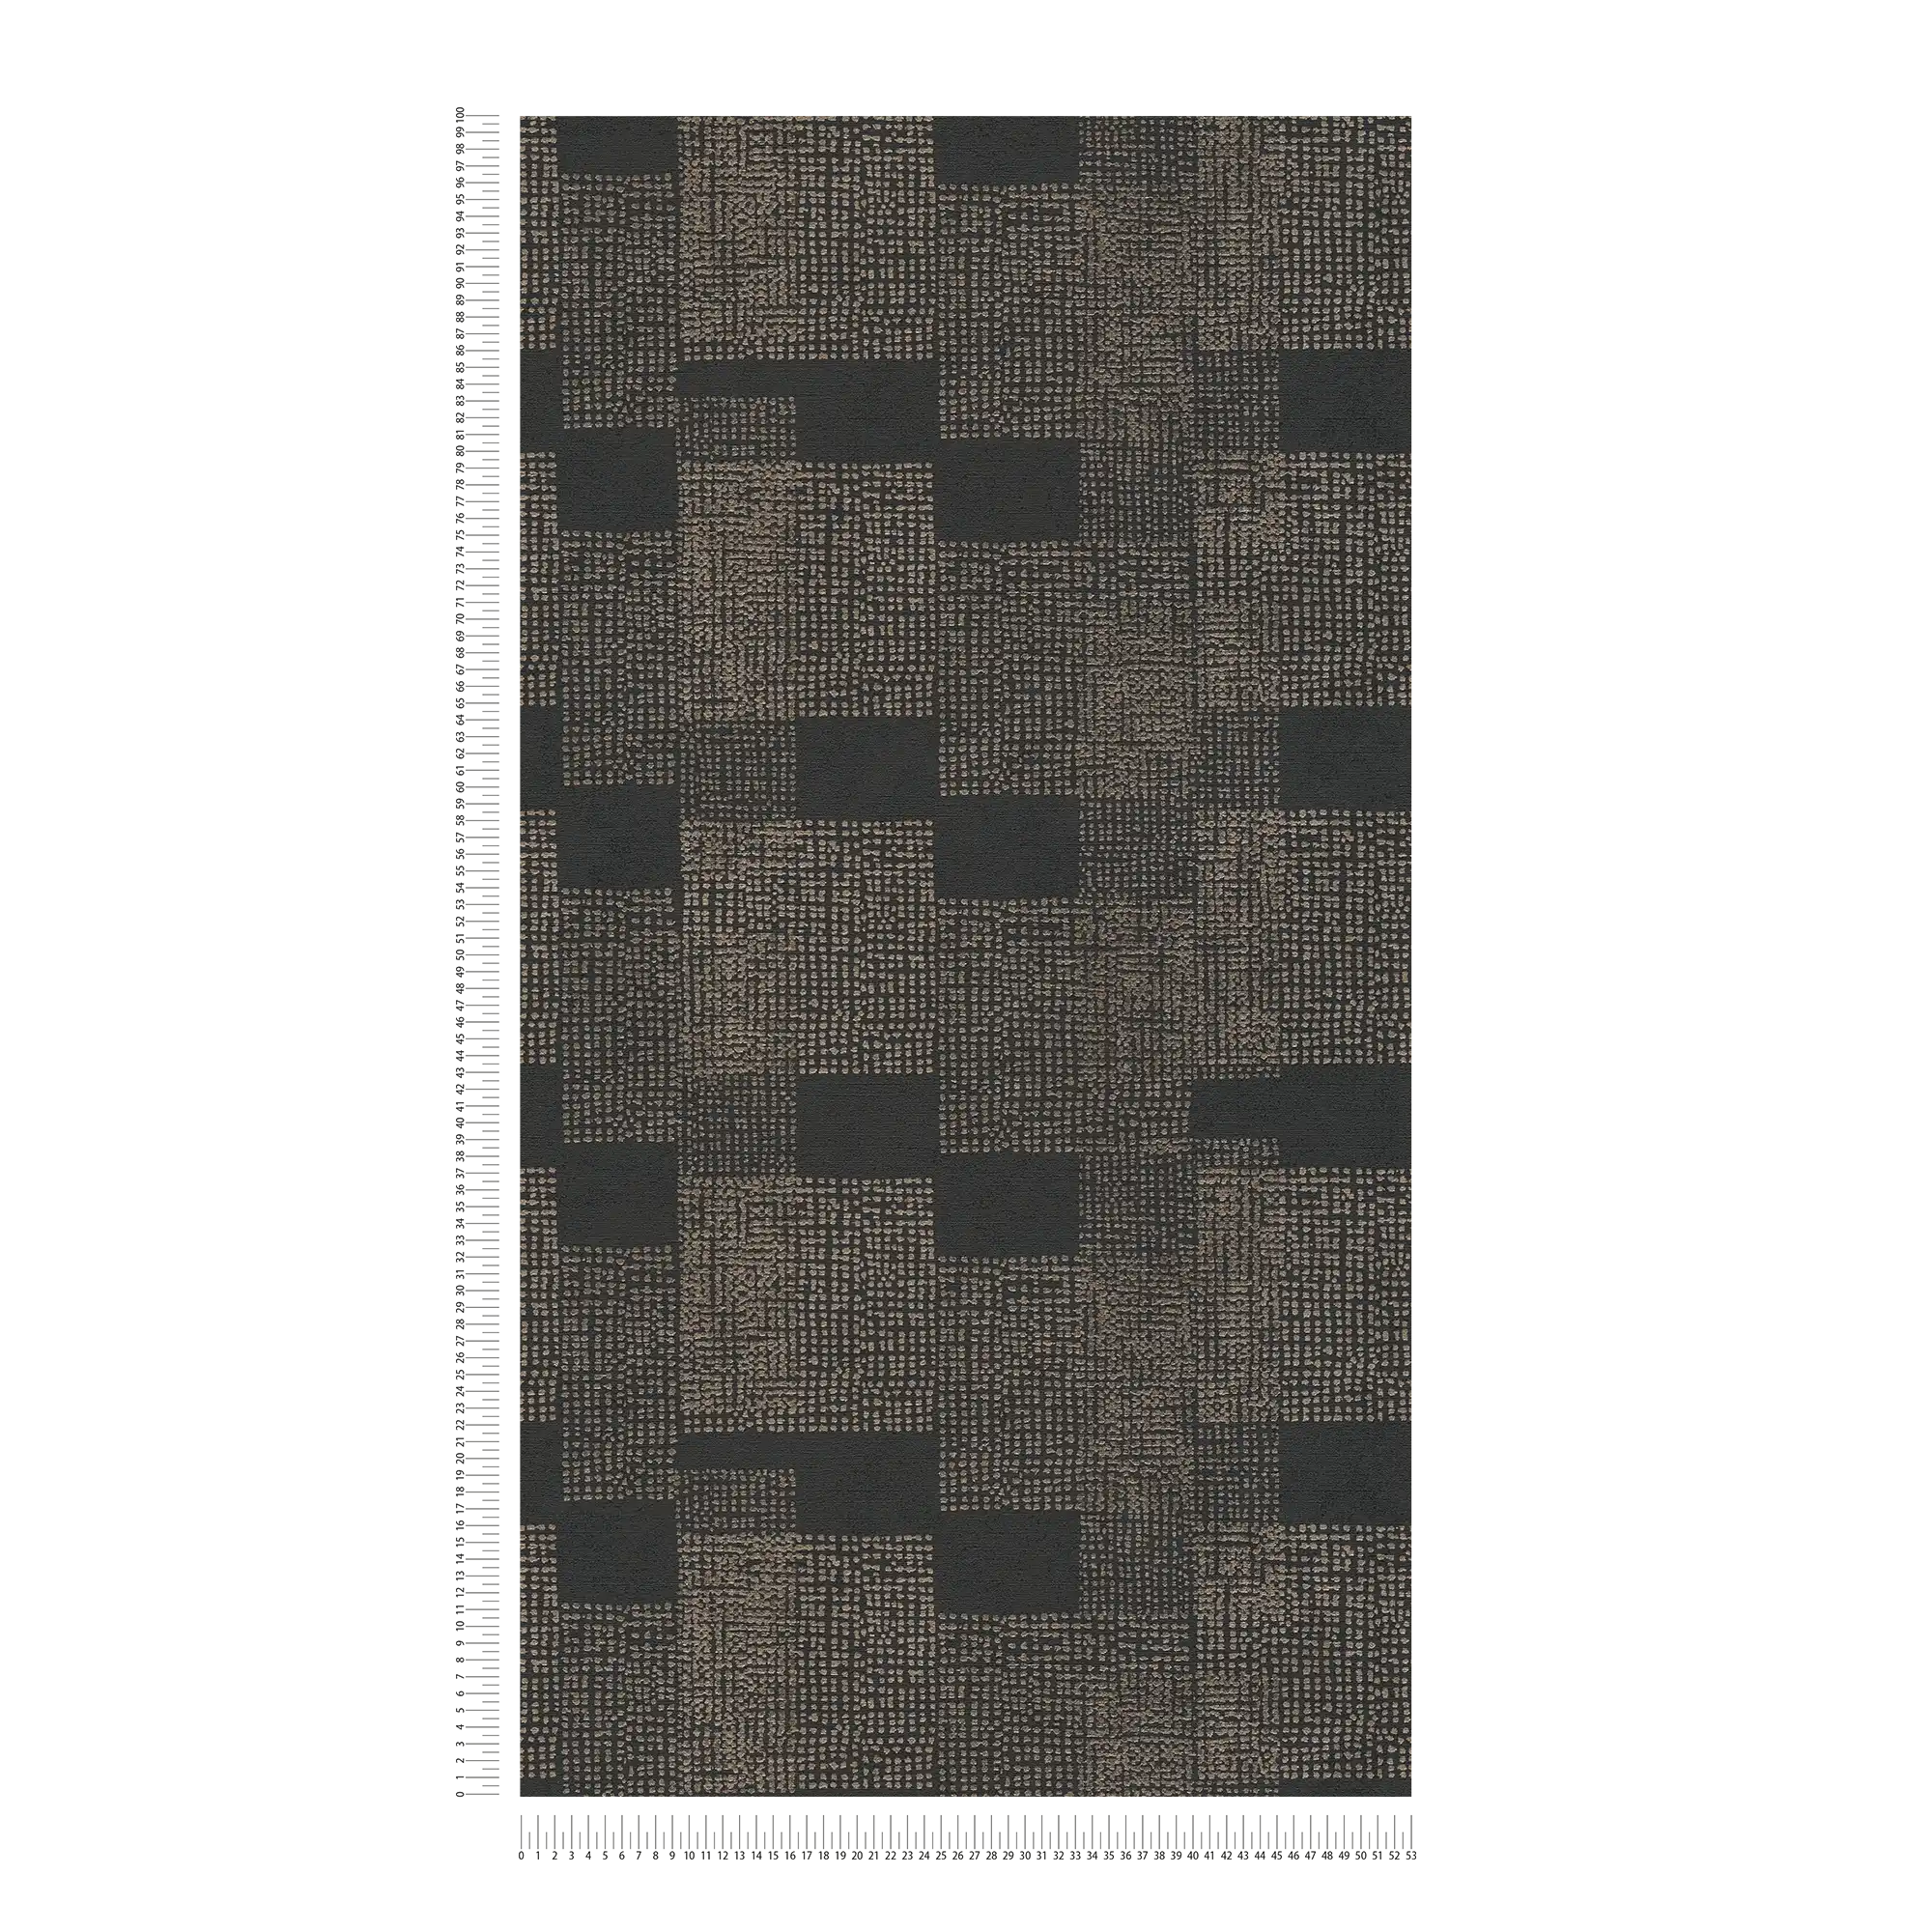             Patroonbehang ethno design - zwart, grijs, metallic
        